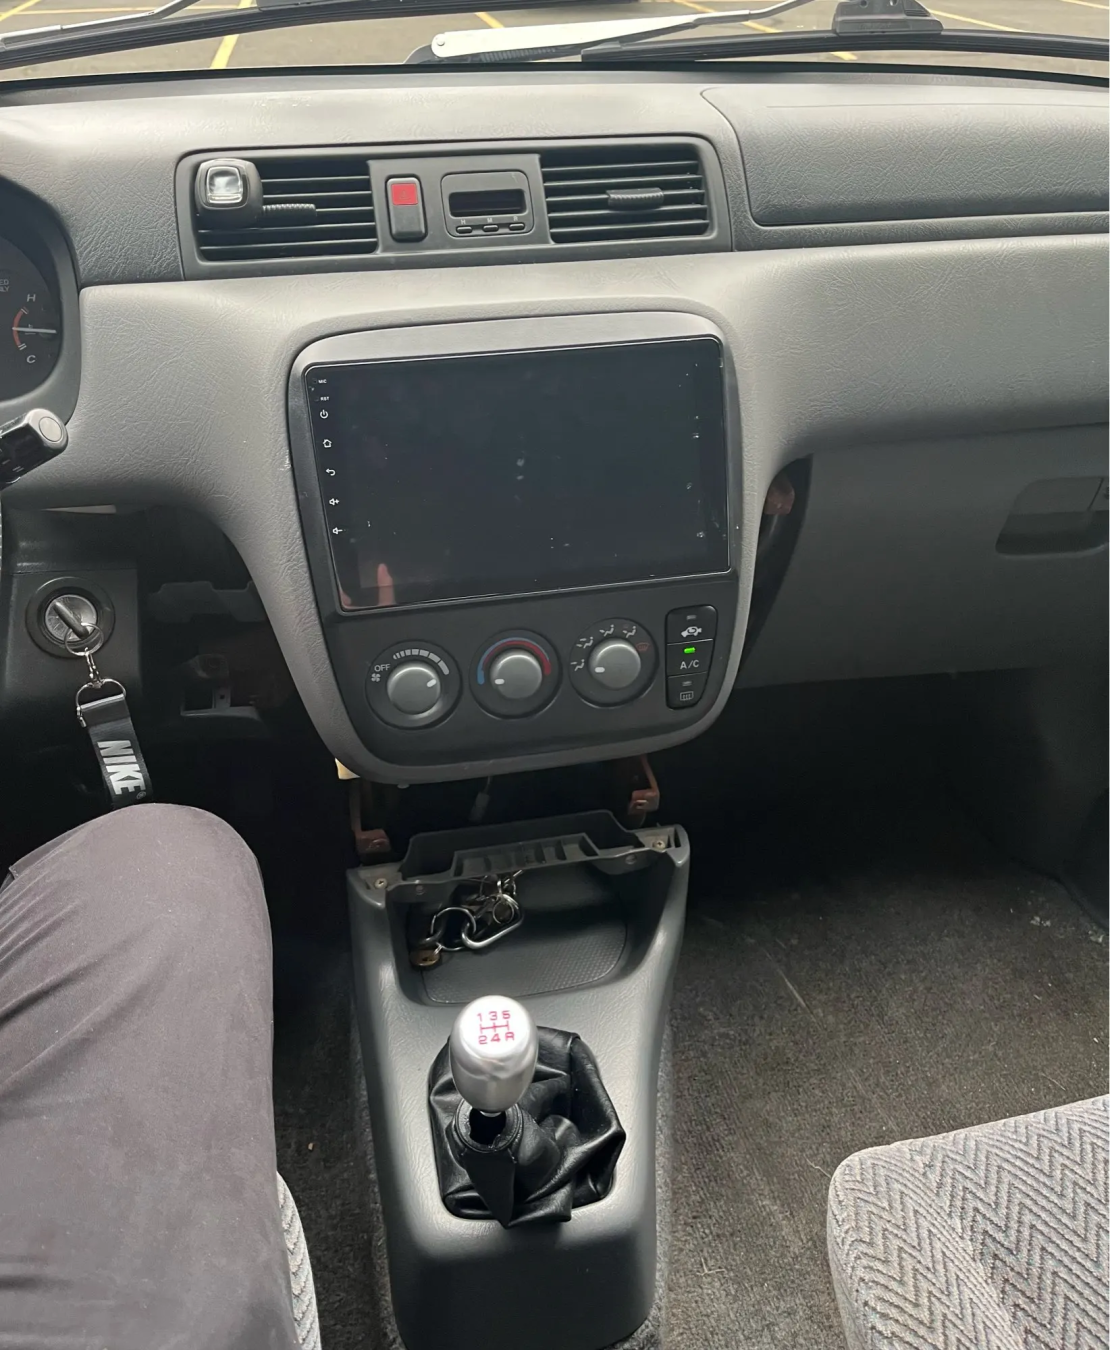 Honda CRV 1996-2001 Android Multimedia/Navigation